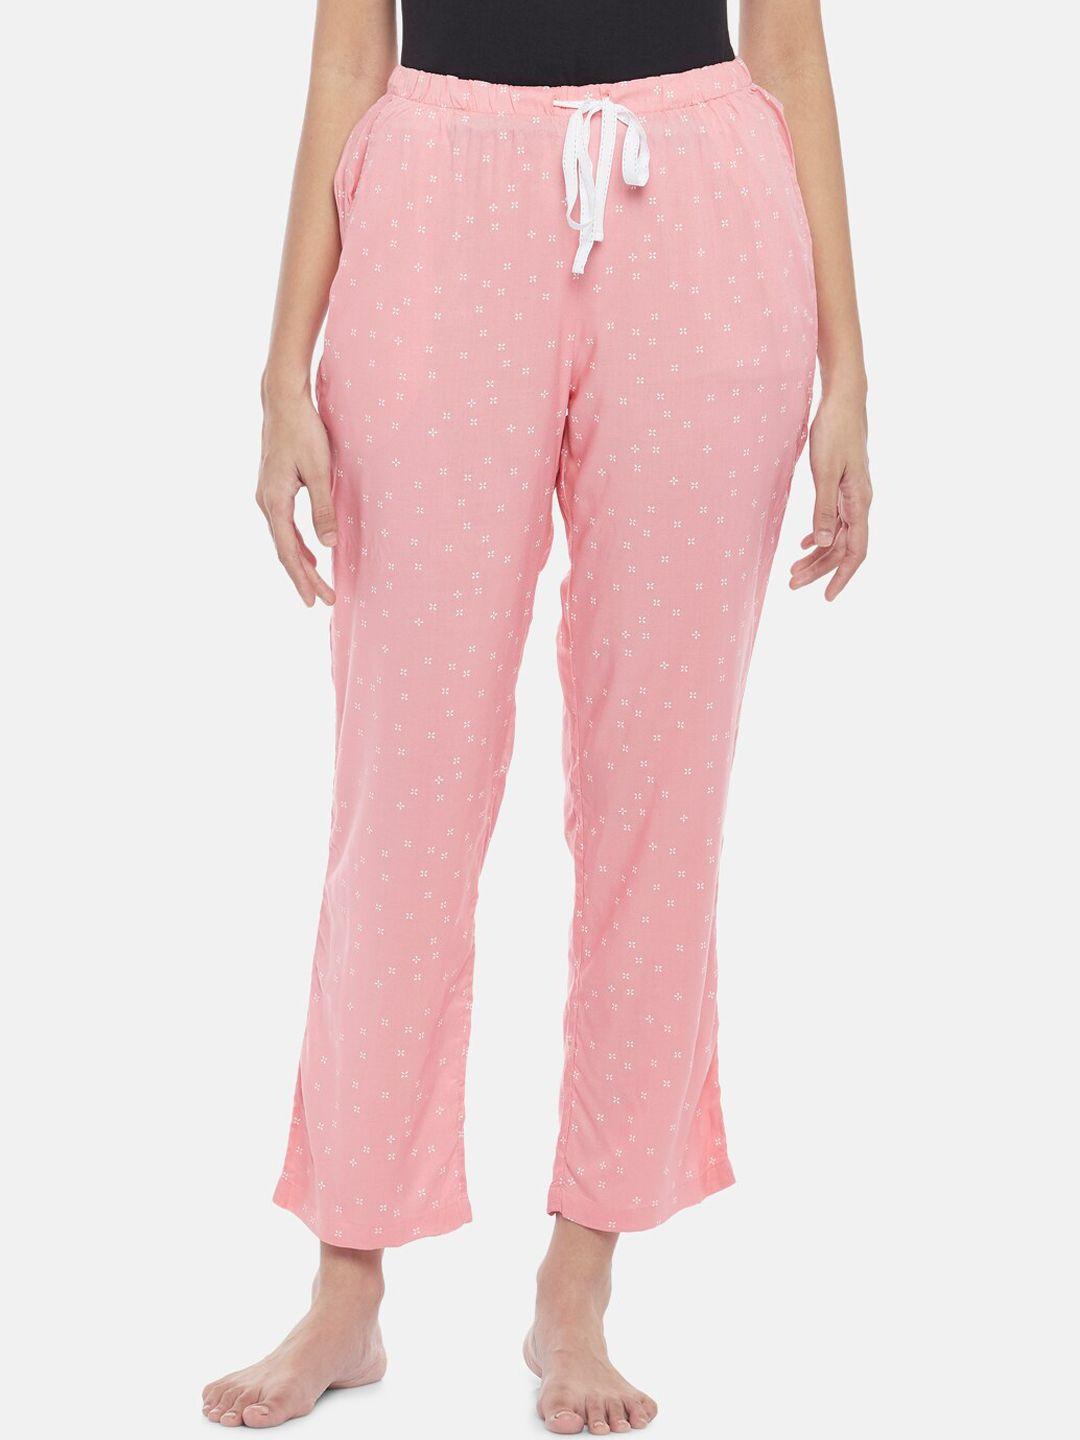 dreamz by pantaloons women coral pink printed cotton lounge pants